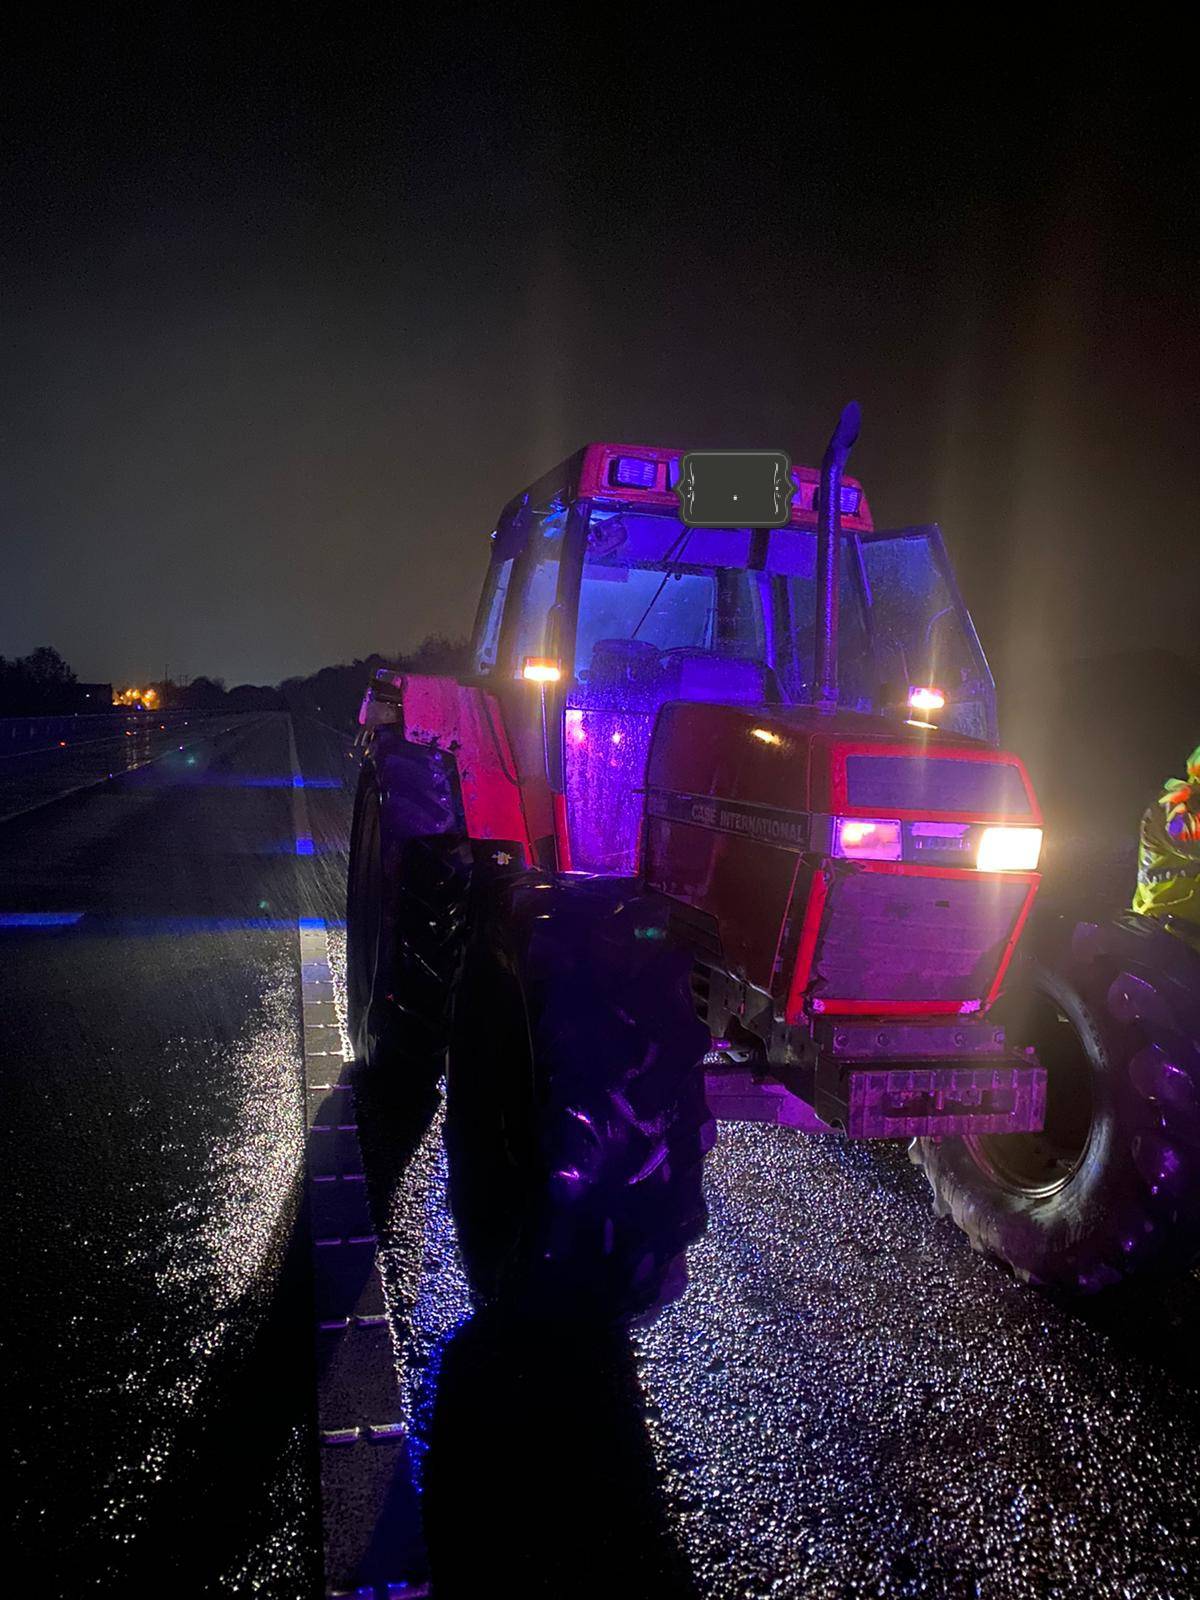 Suspected of drinkdriving tractor wrong way on motorway